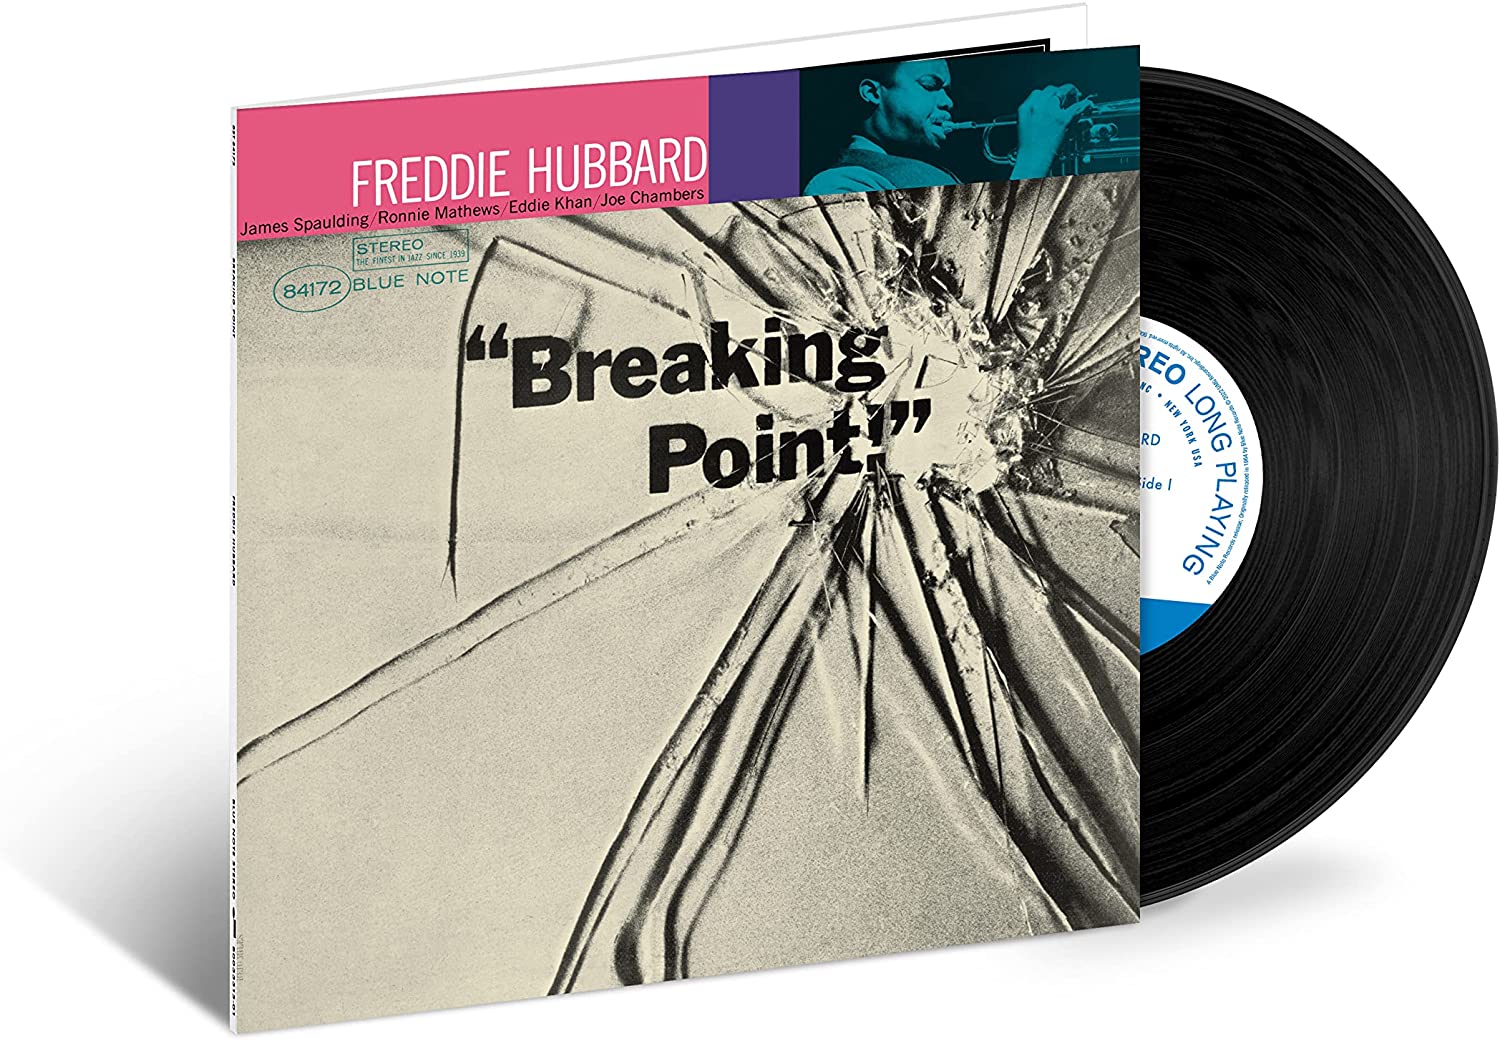 FREDDIE HUBBARD - Breaking Point (Blue Note Tone Poet Series) - LP - 180g Vinyl